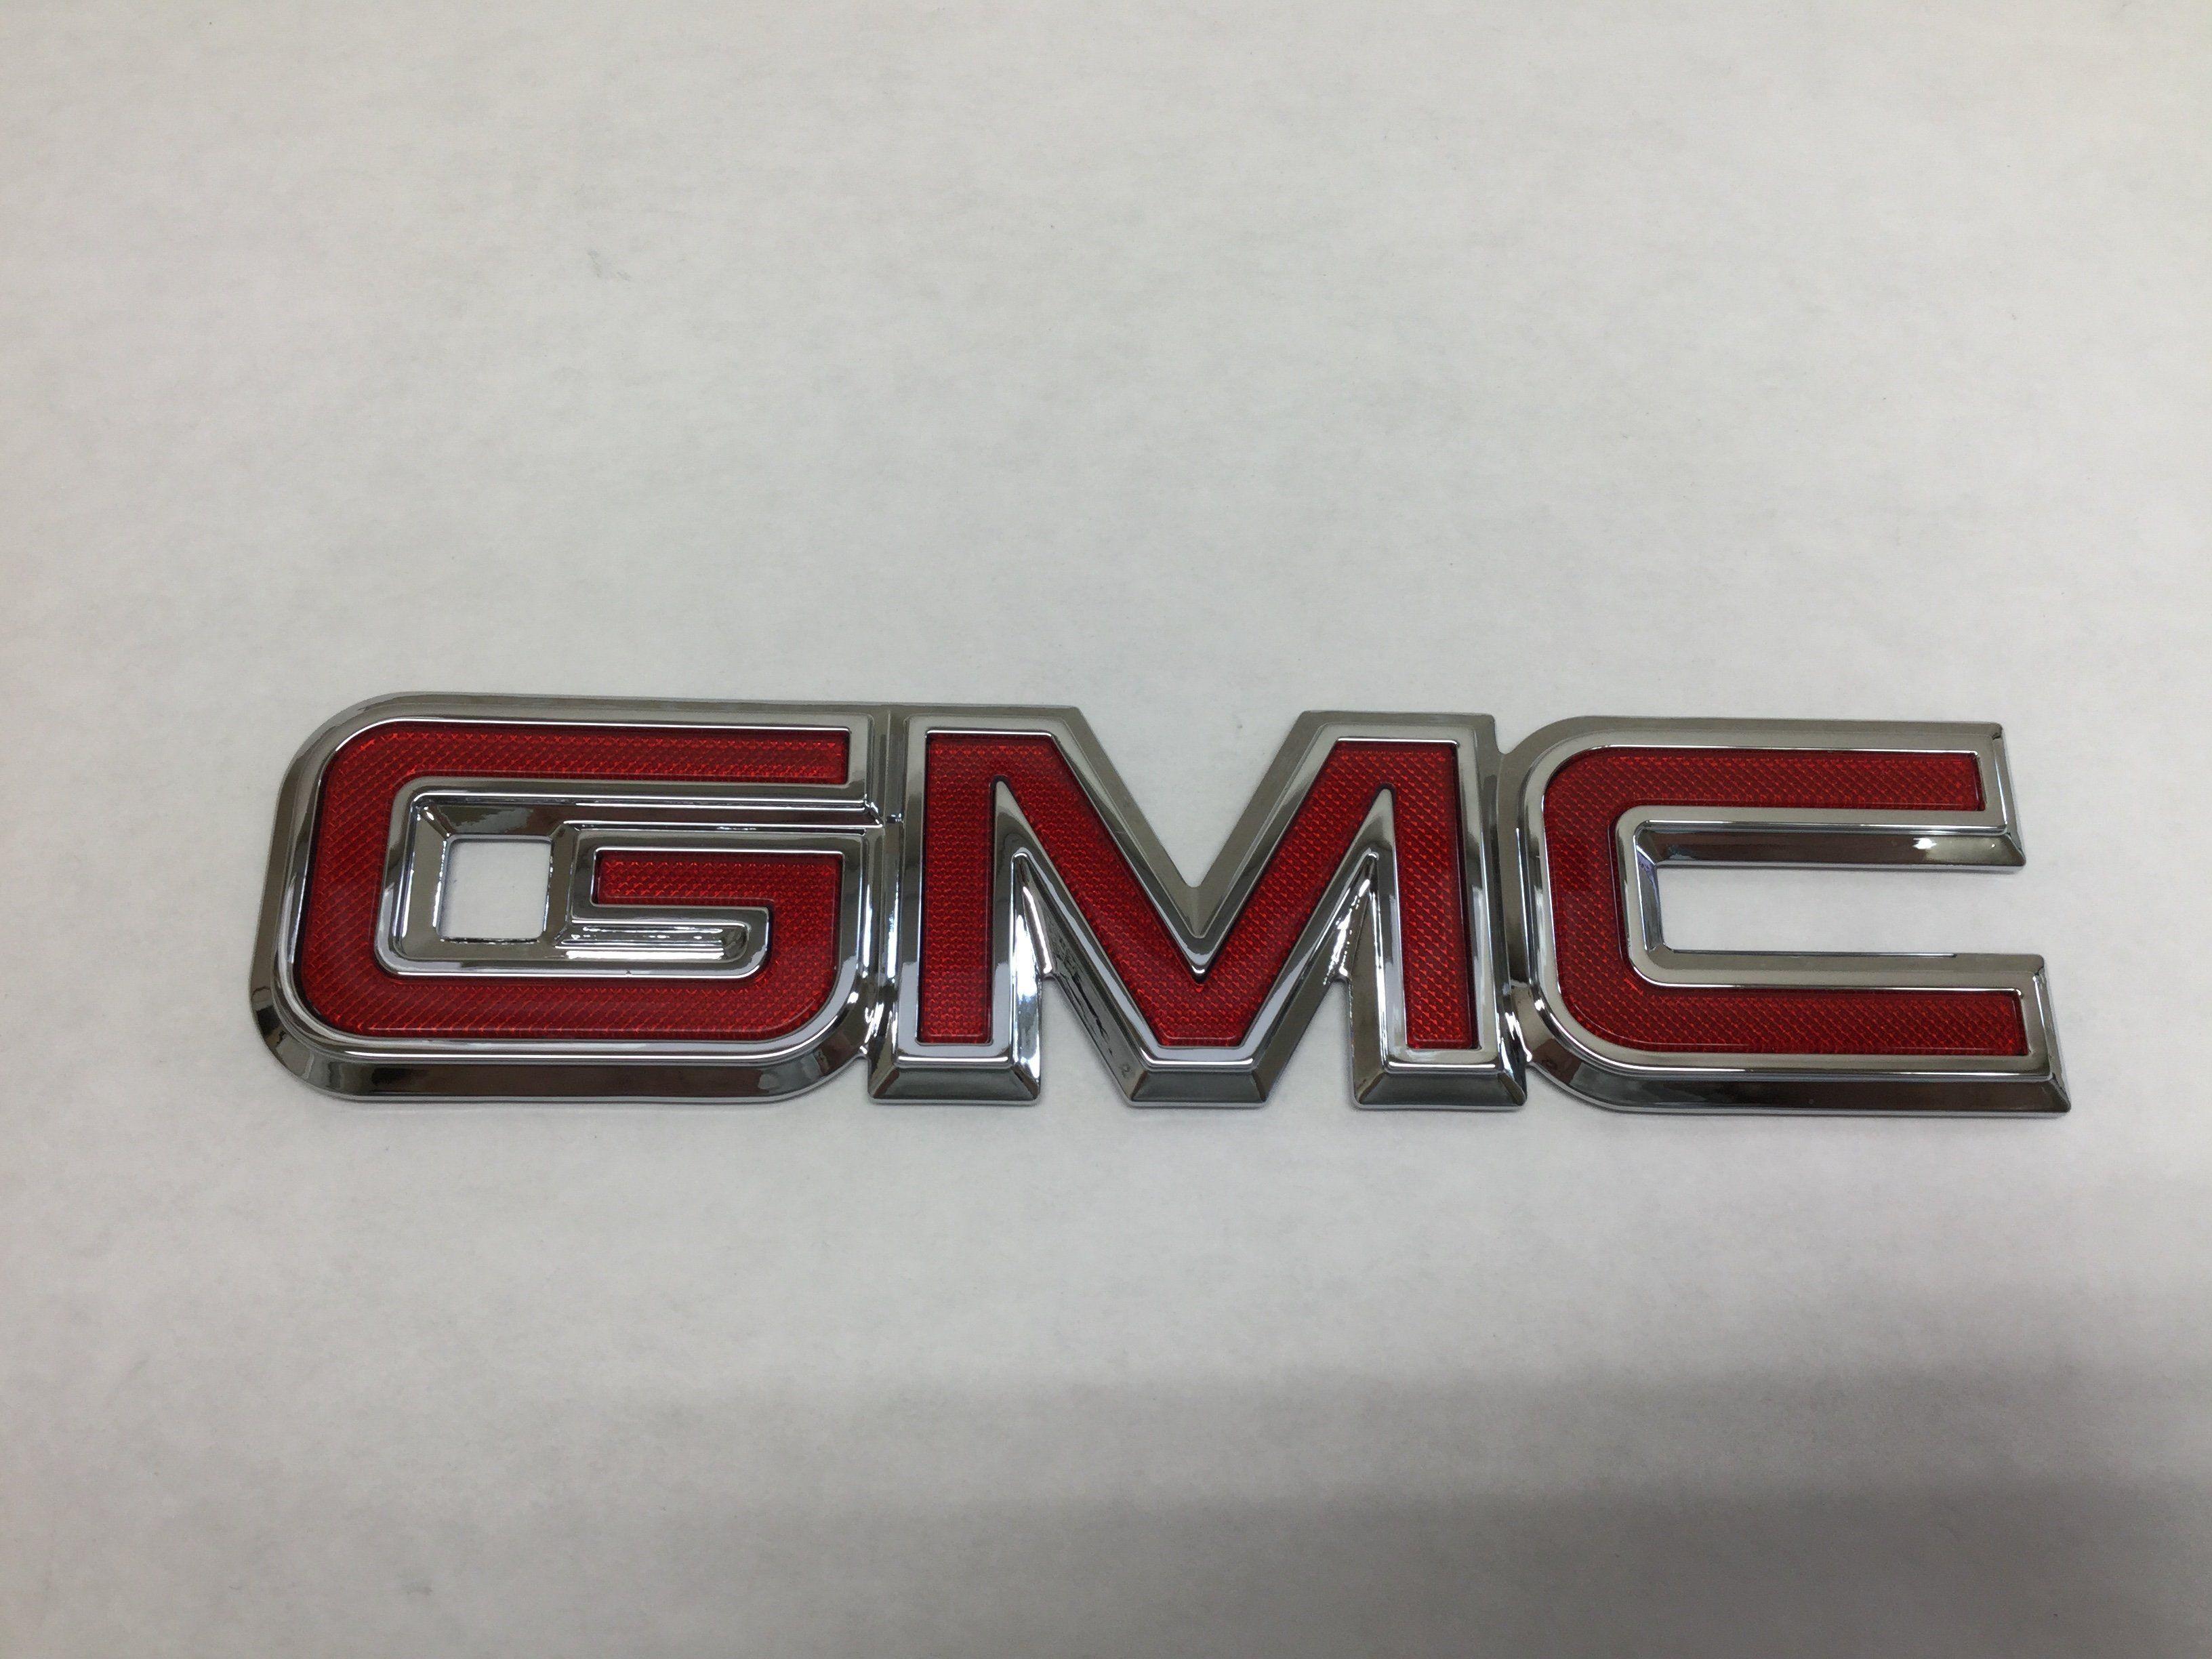 Cool GMC Logo - New 1998 2006 GMC Yukon Suburban Safari Emblem Rear Tail Gate